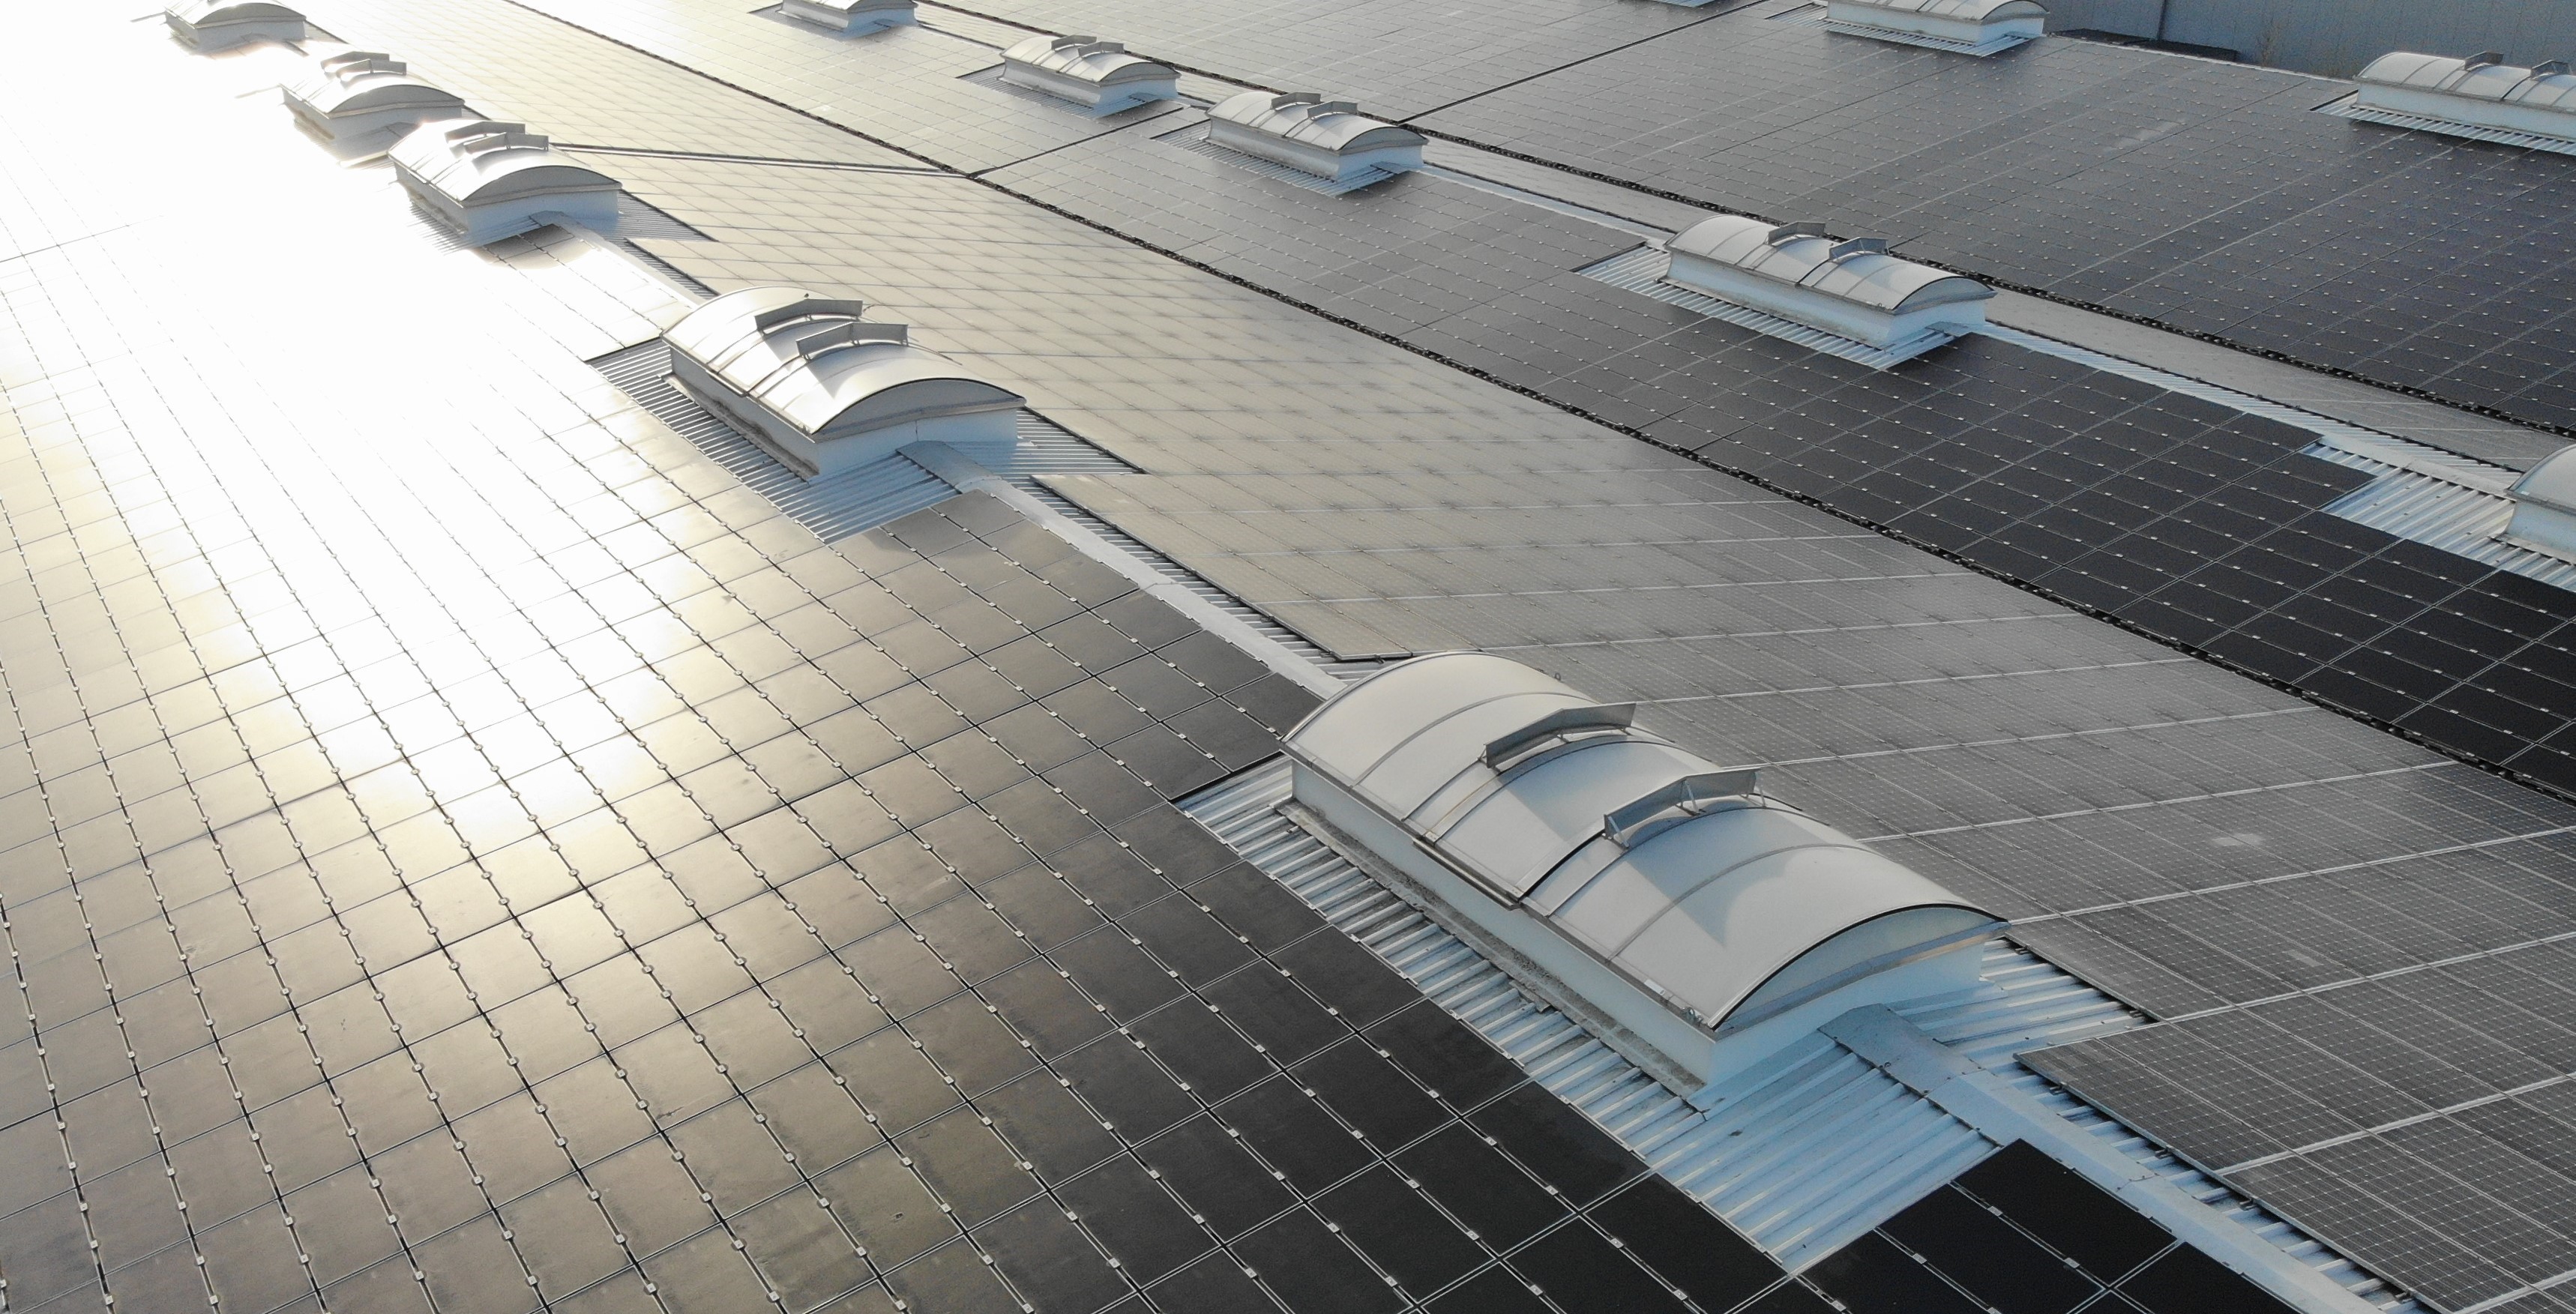 30.08.2022 - Η SolarKapital αποκτά έξι ακόμη ΦΒ σταθμούς επί οροφής στη Νότια Γερμανία 